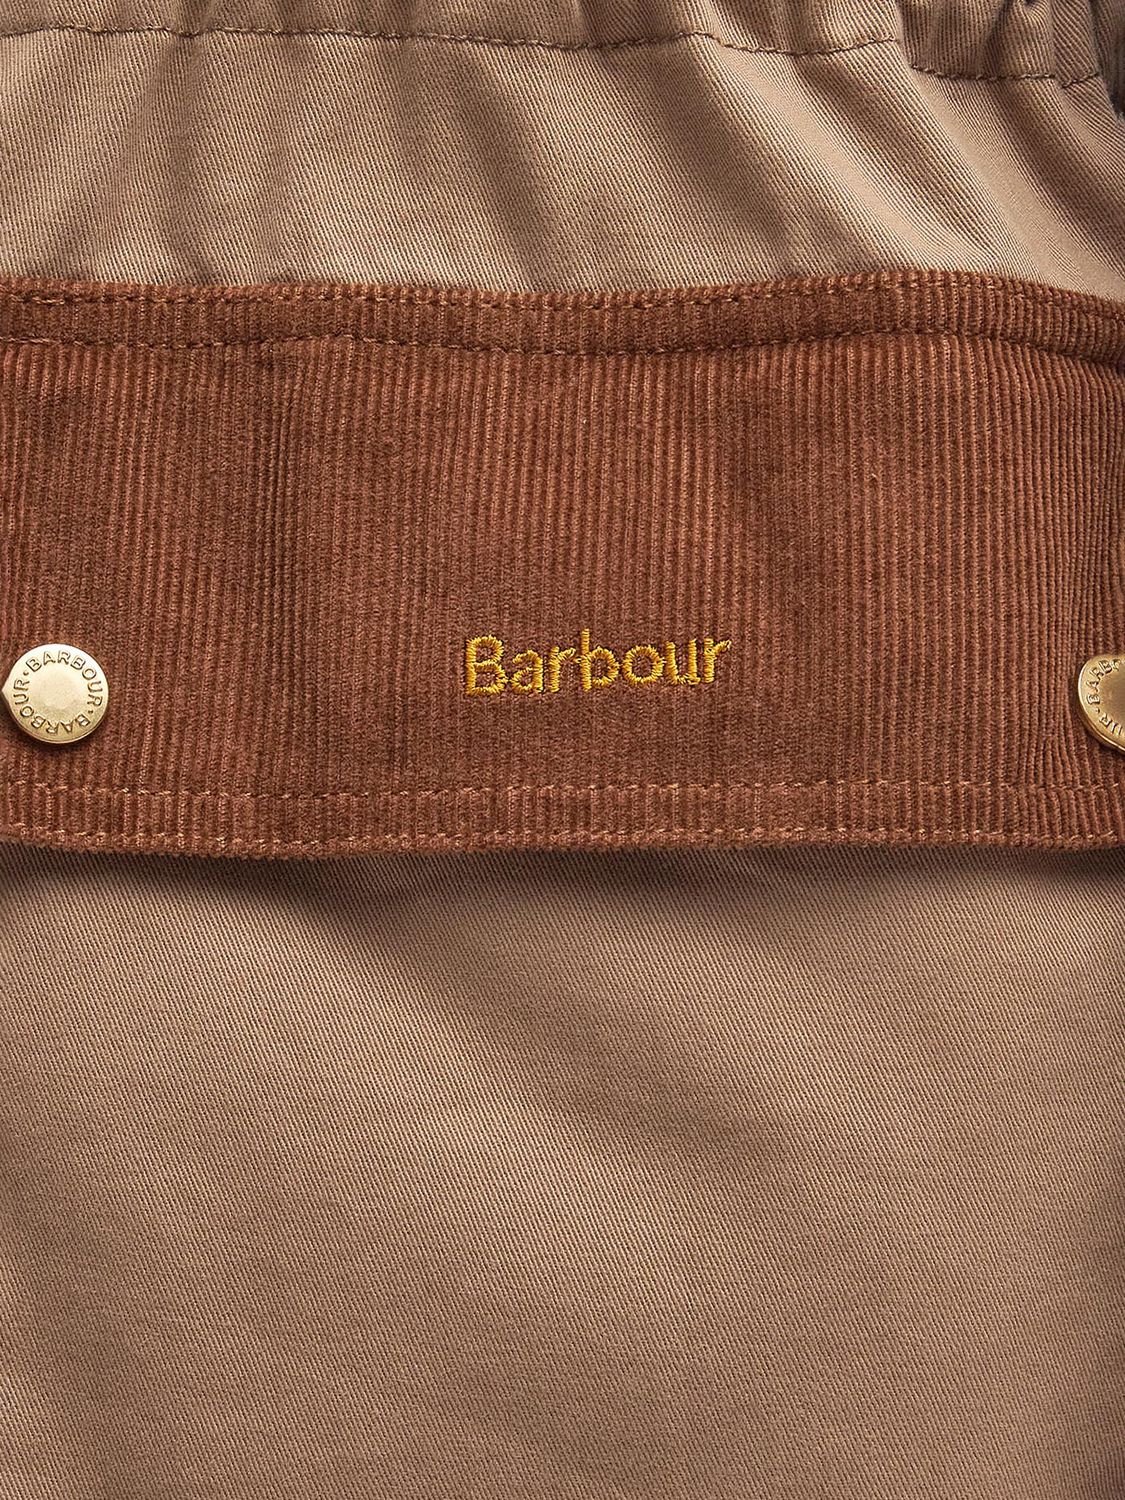 Barbour Maeva Utility Jacket, Hazelnut, 16